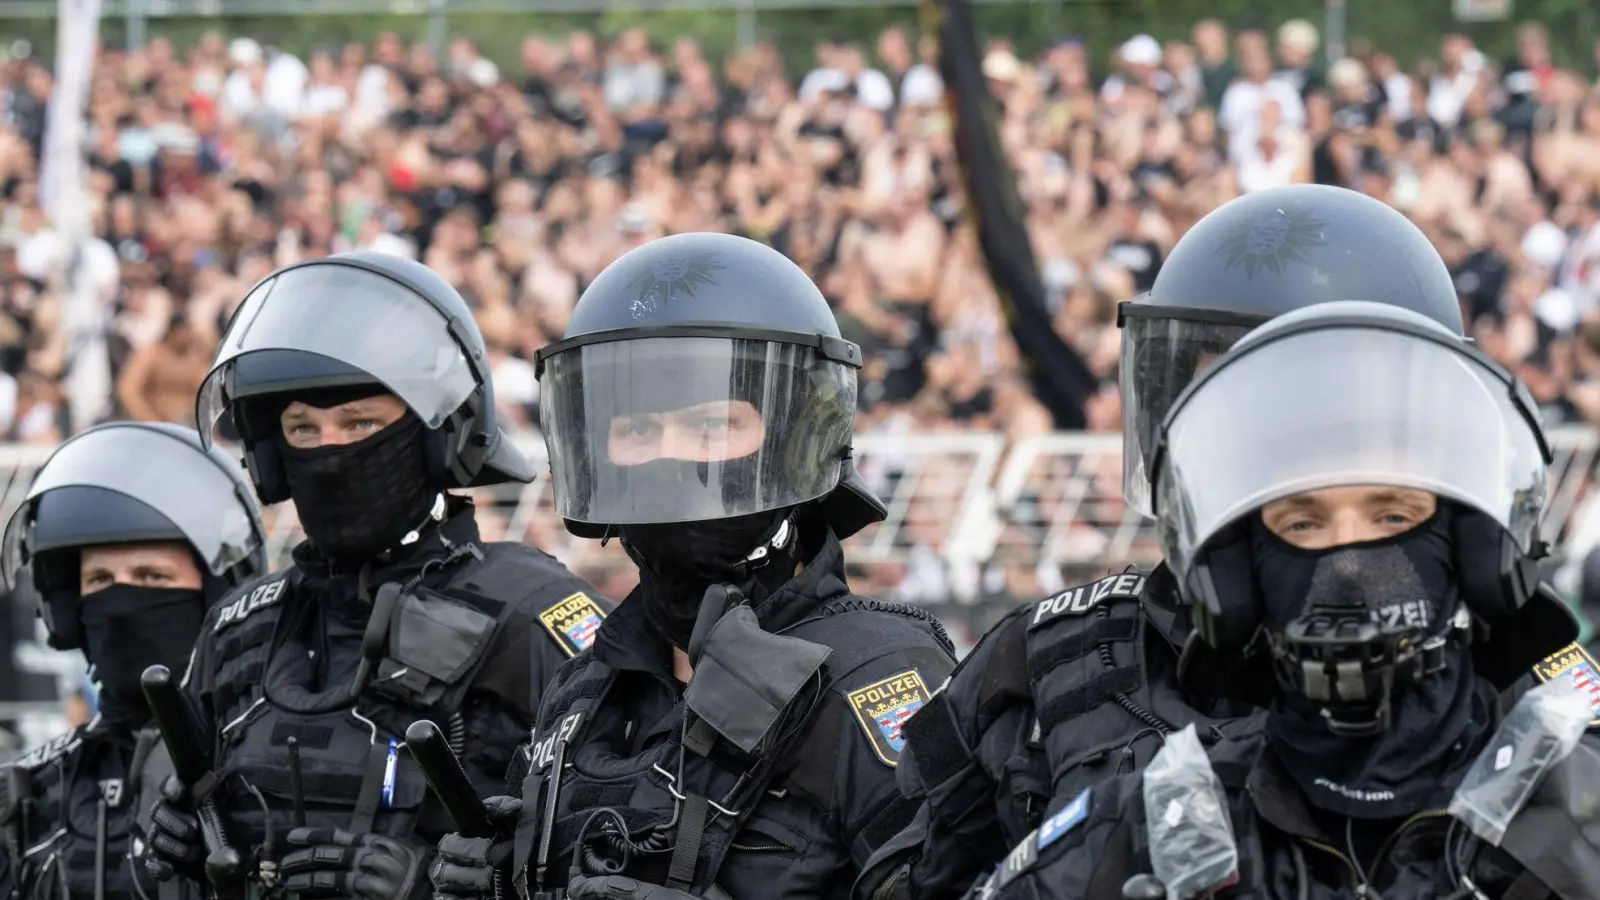 Die Polizei sicherte die Lage im Stadion. (Foto: Hendrik Schmidt/dpa)